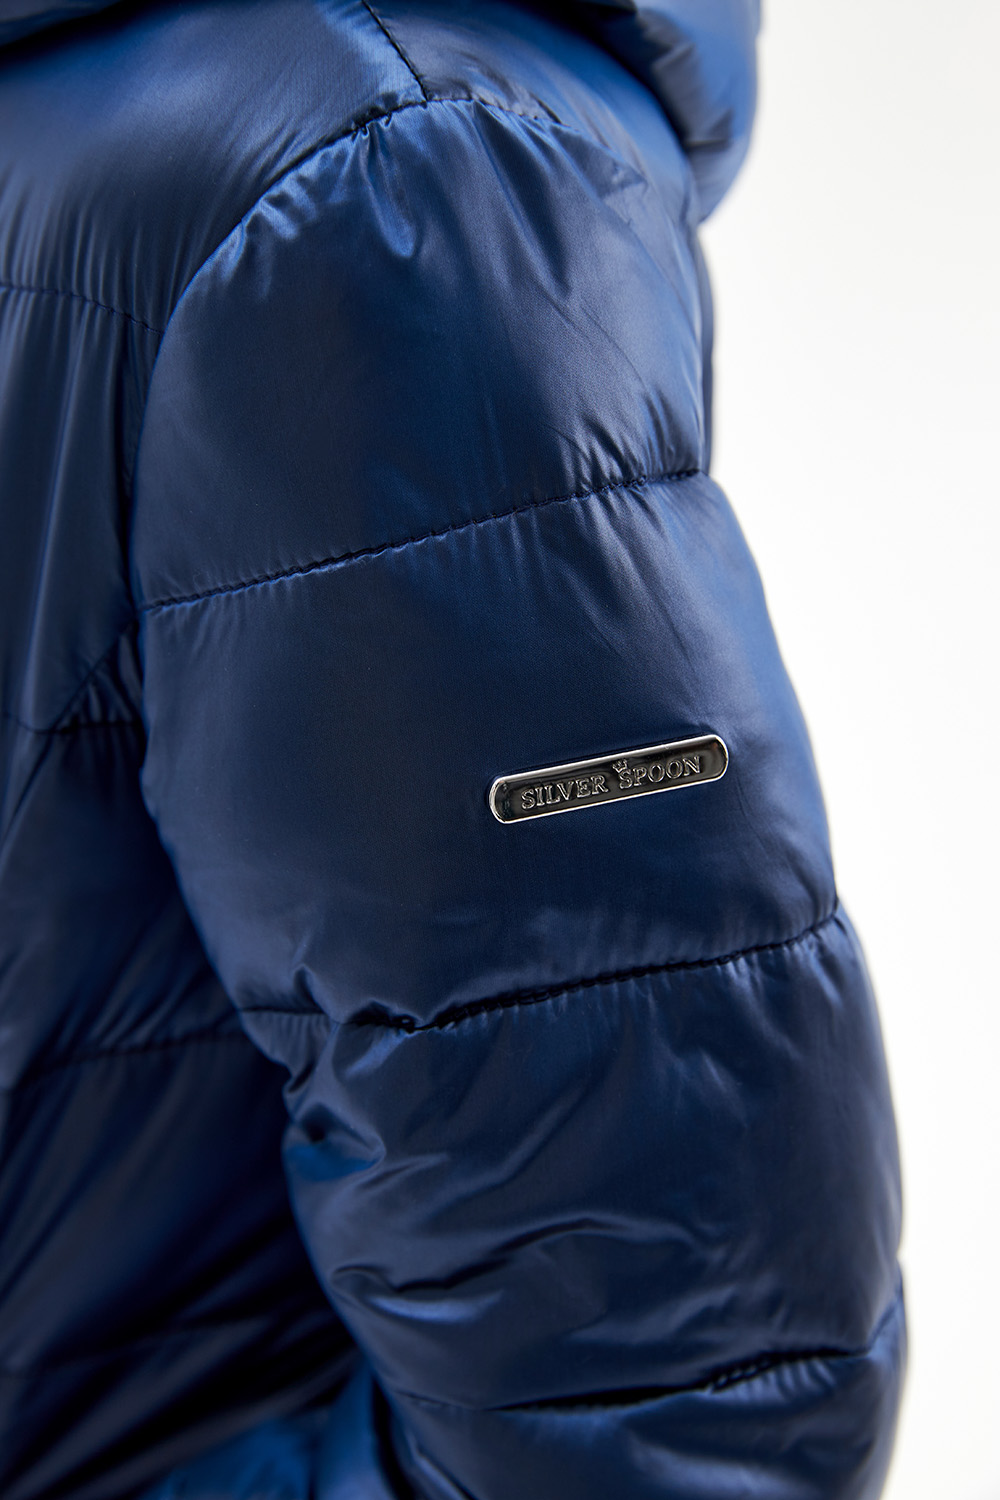 Стеганое пальто ниже колена с контрастной подкладкой (SSFSG-026-20307-317) Silver spoon